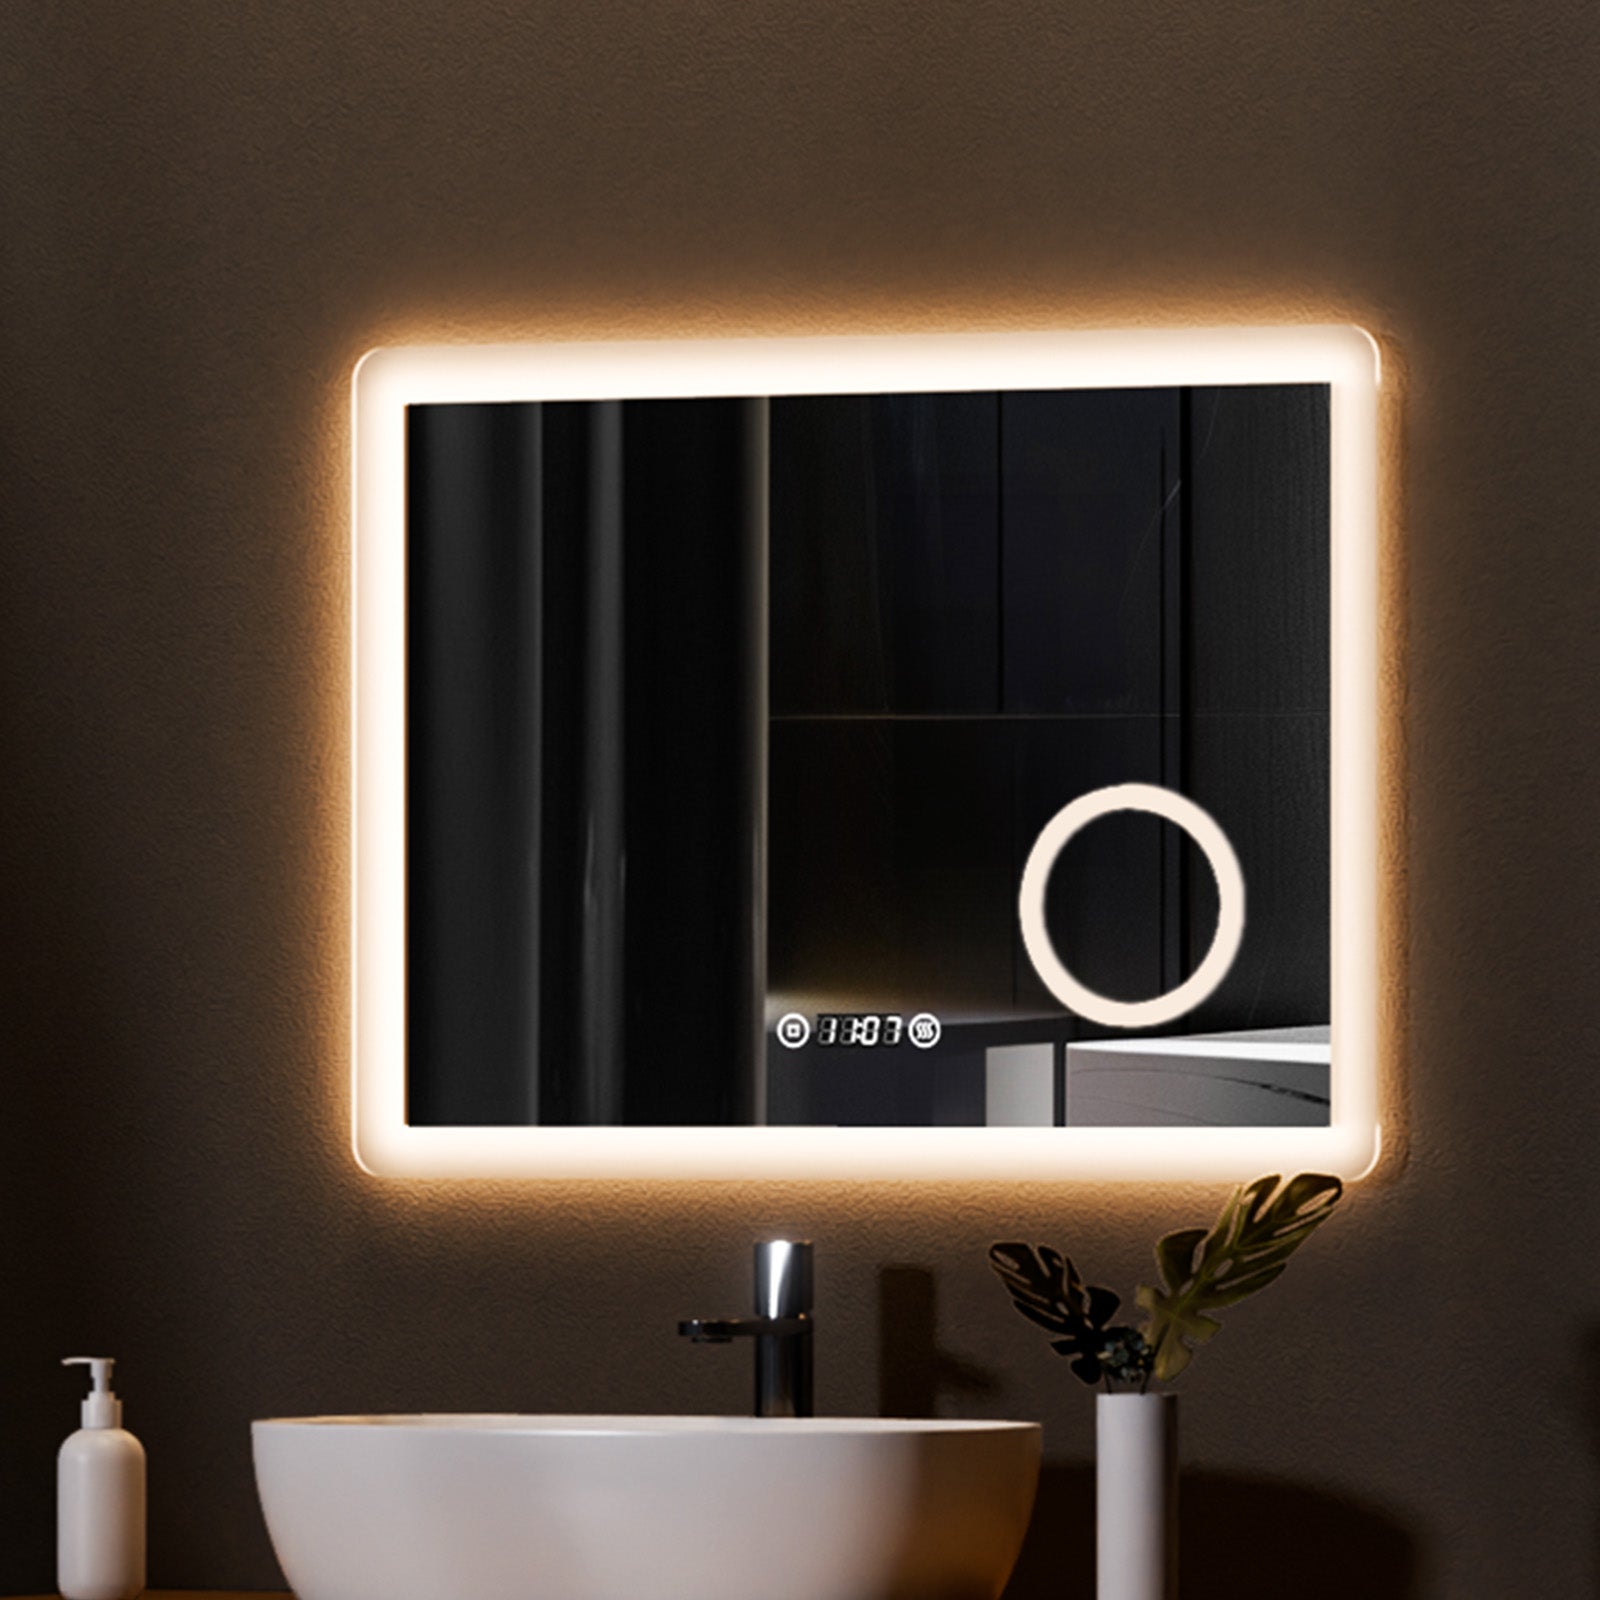 EMKE Badezimmerspiegel mit Beleuchtung „LeeMi πX Plus“ 80x60cm, 3 Lichtfarben, Touch, Dimmbar, Beschlagfrei, Vergrößerungsspiegel, Uhr